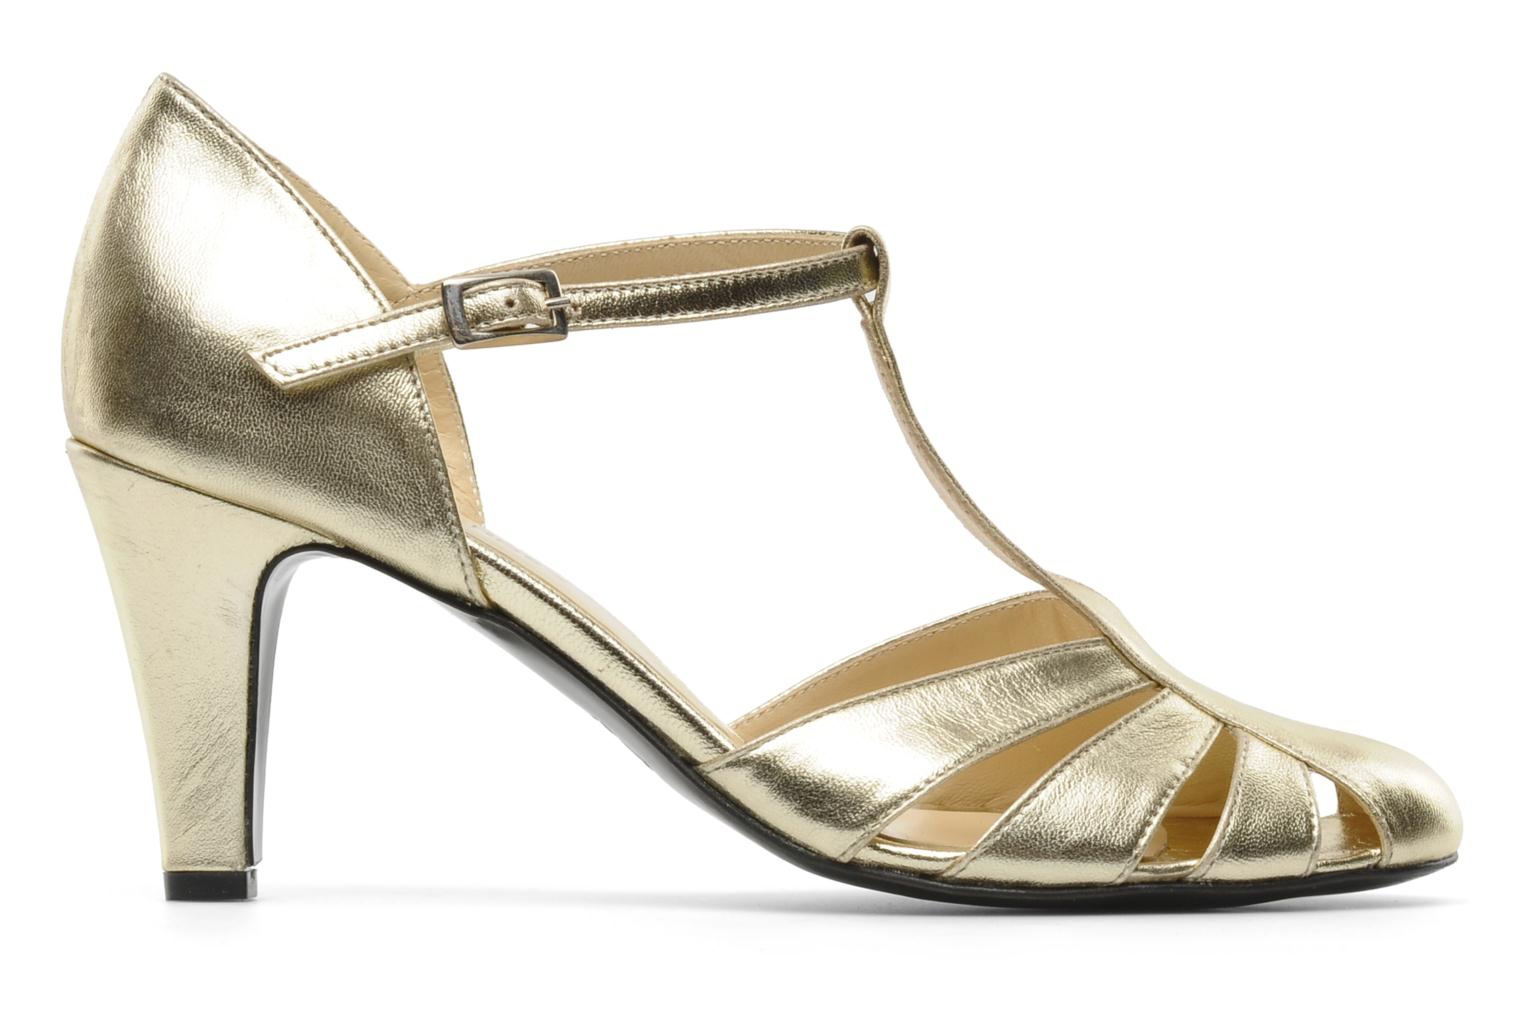 Georgia Rose Vareo High heels in Bronze and Gold at Sarenza.co.uk (104226)